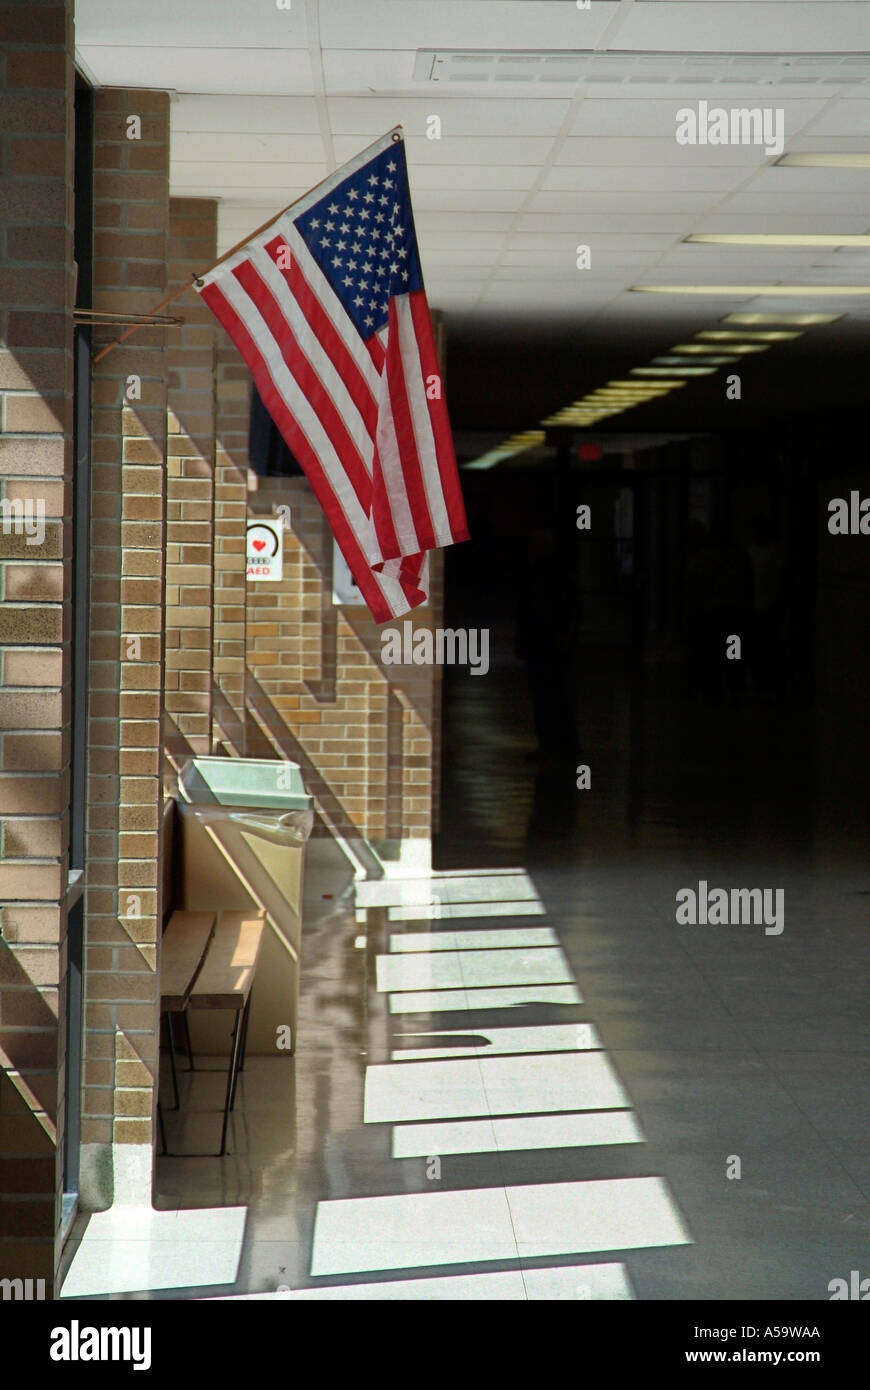 Drapeau américain se bloque dans le couloir d'une école publique Banque D'Images